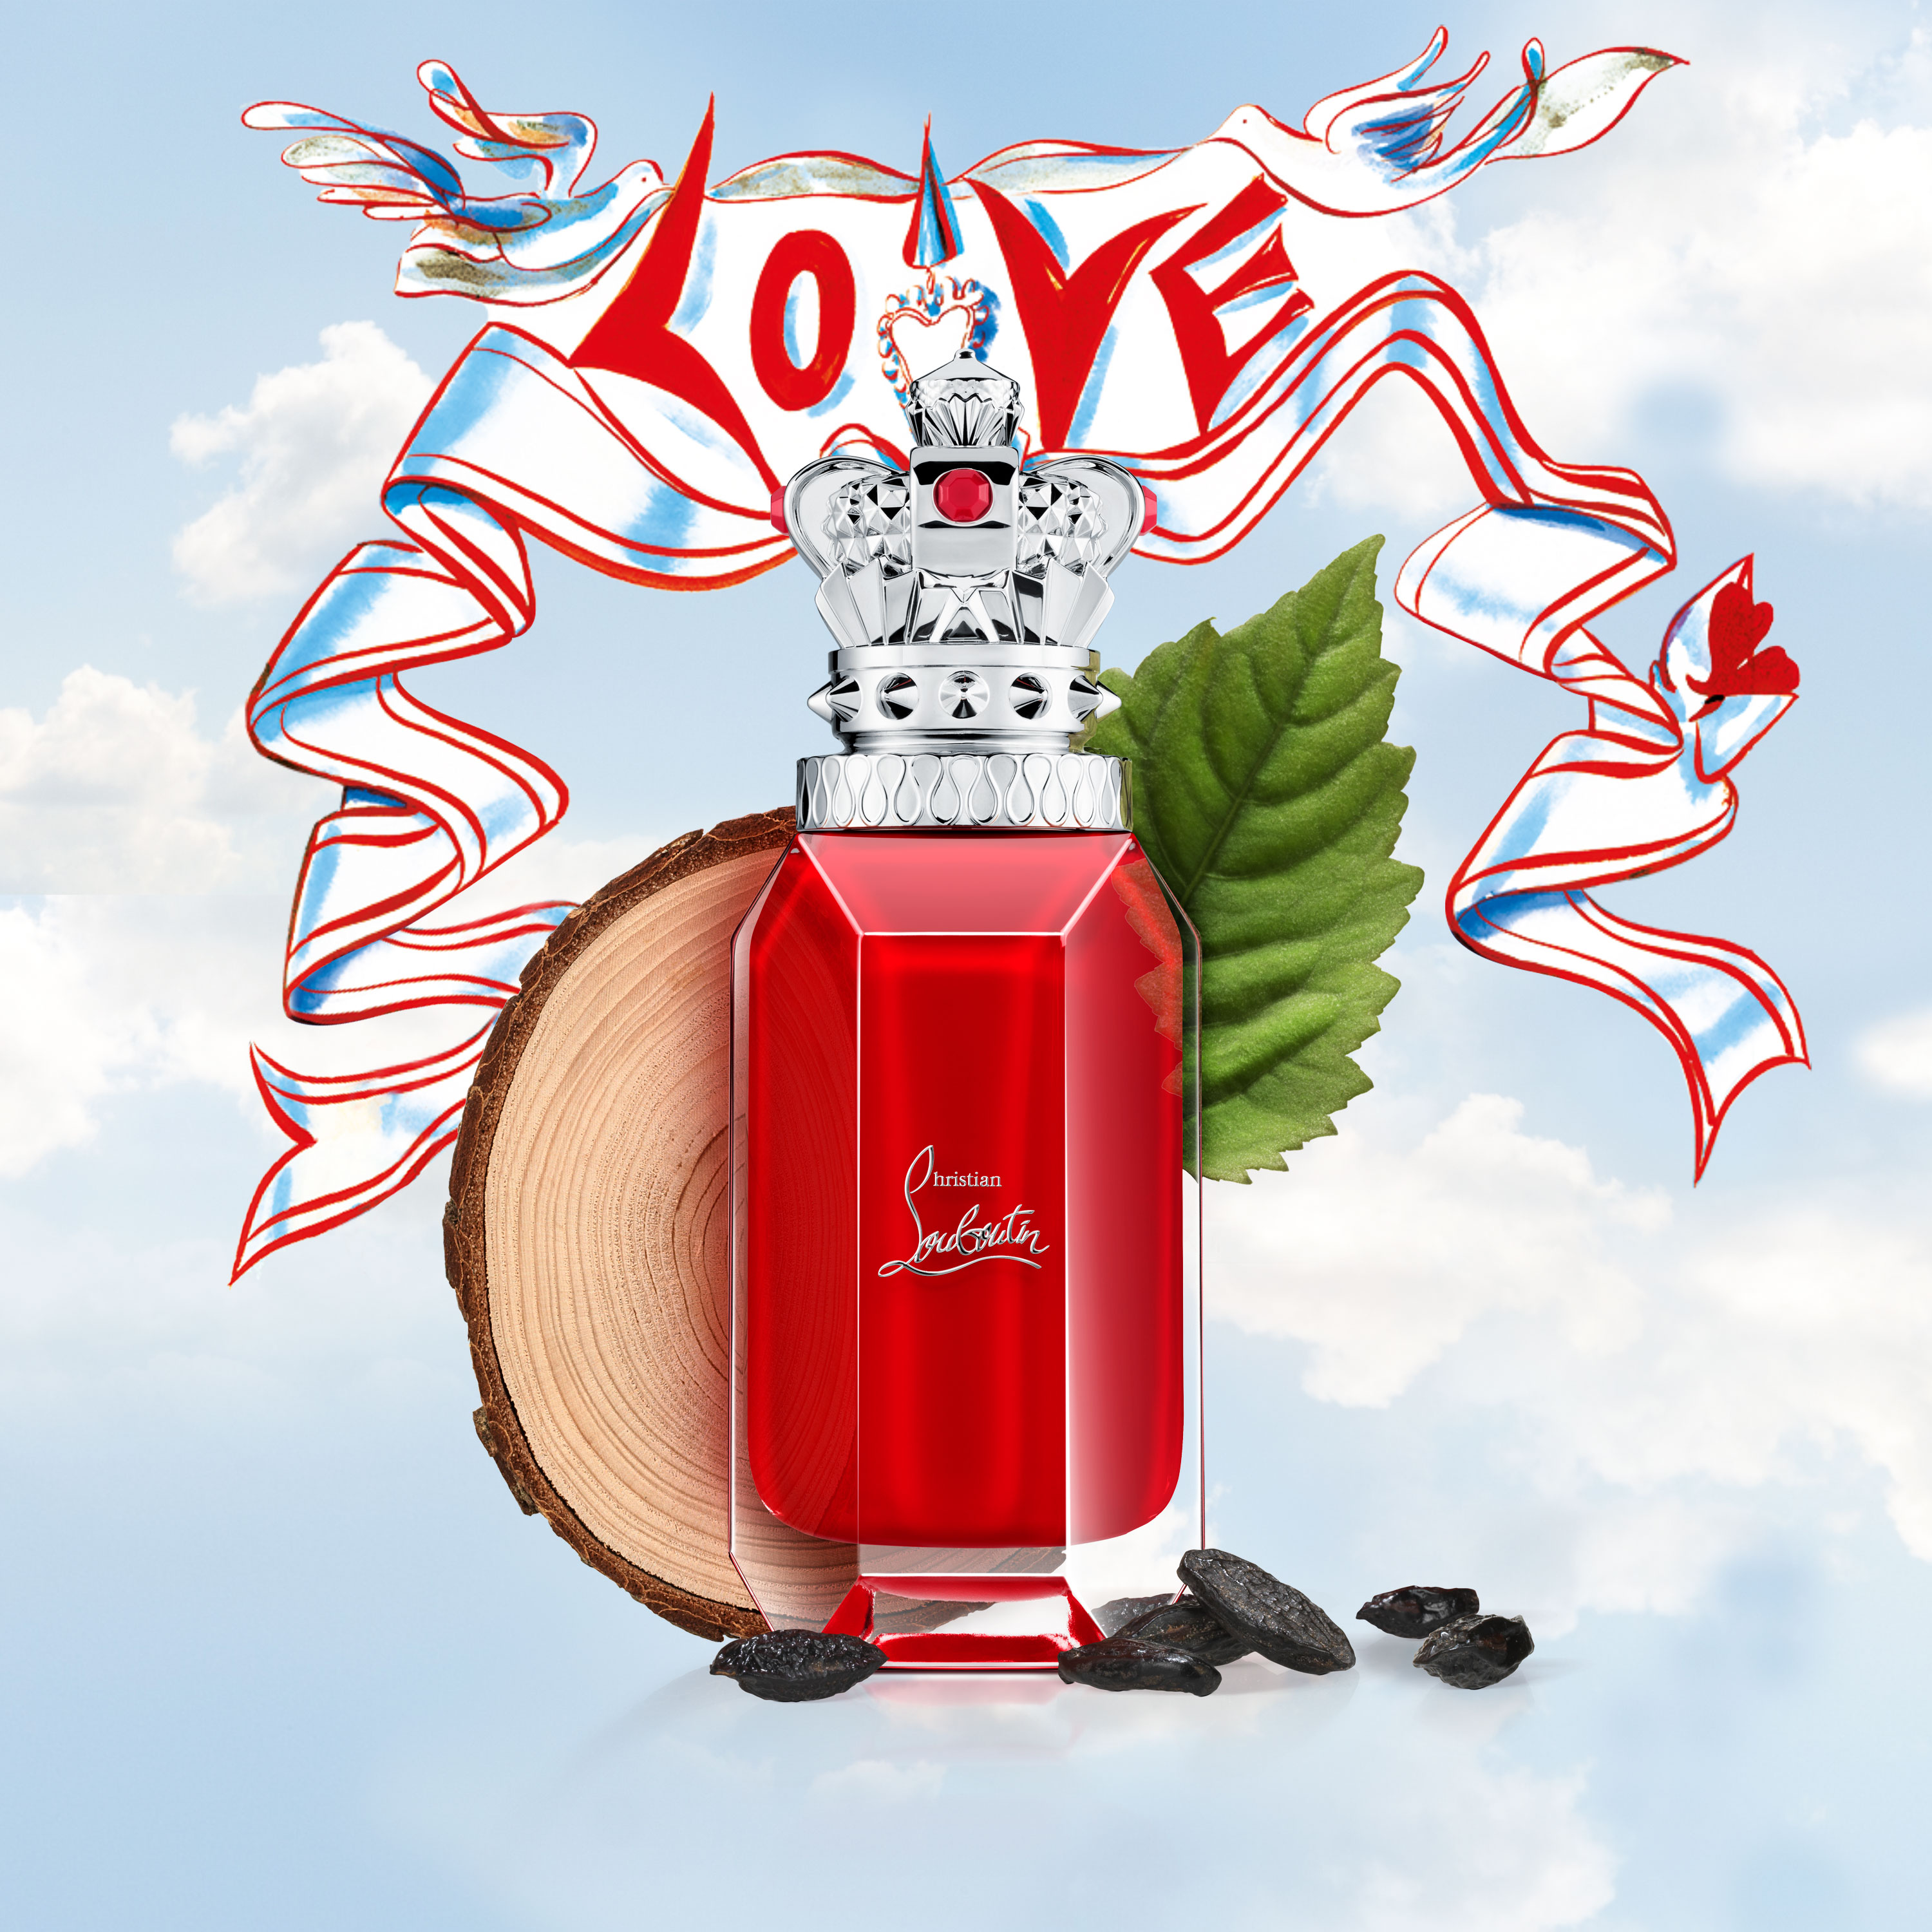 Christian Louboutin - Loubicrown fragrance